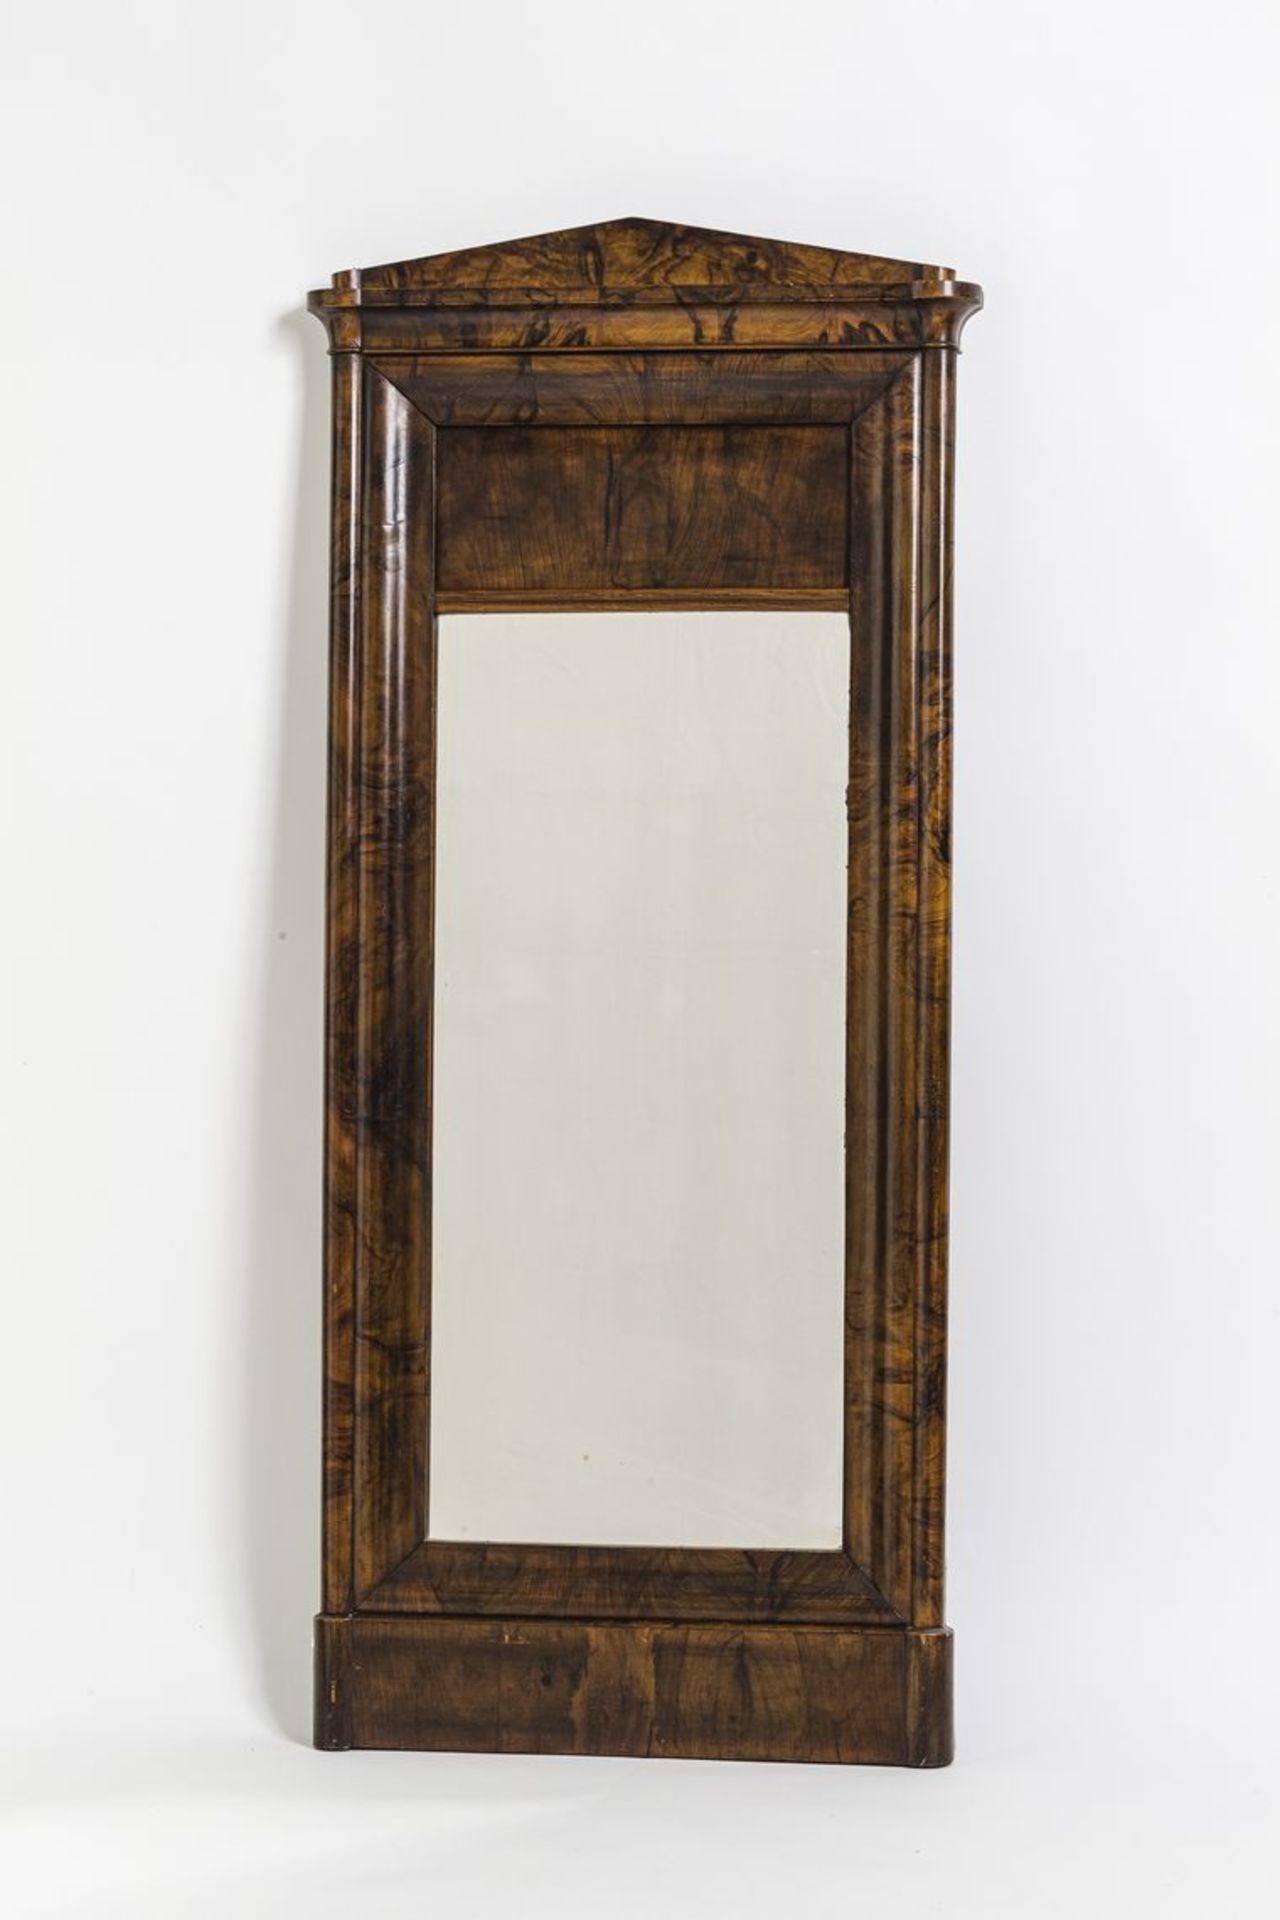 Empire-PfeilerspiegelMahagoni, geschwungener Rahmen, architektonisches Gesims. Um 1810. H. 143 cm,